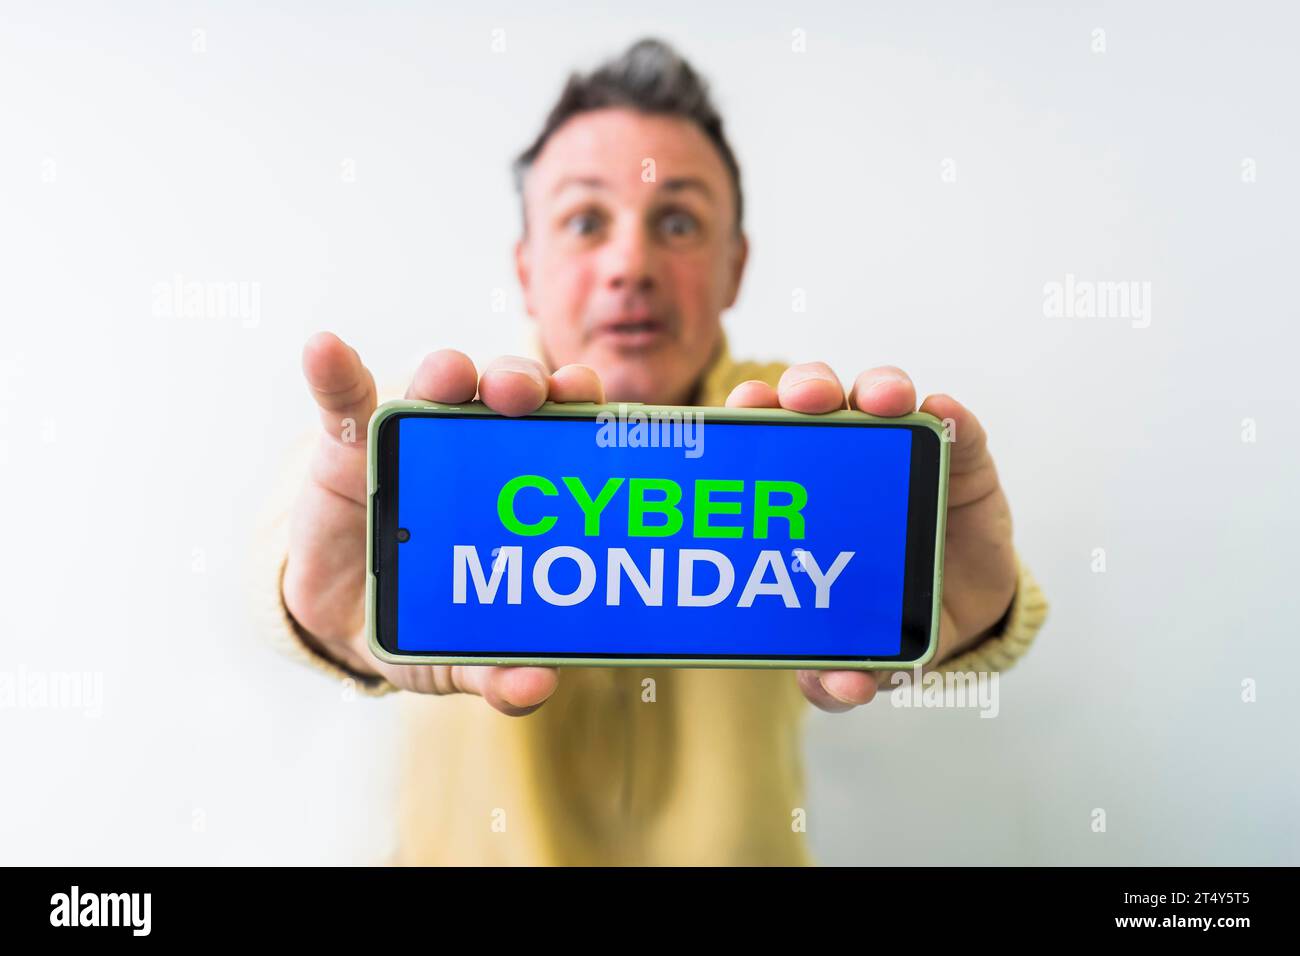 Homme fou tenant le téléphone portable avec la publicité Cyber Monday sur l'écran Banque D'Images